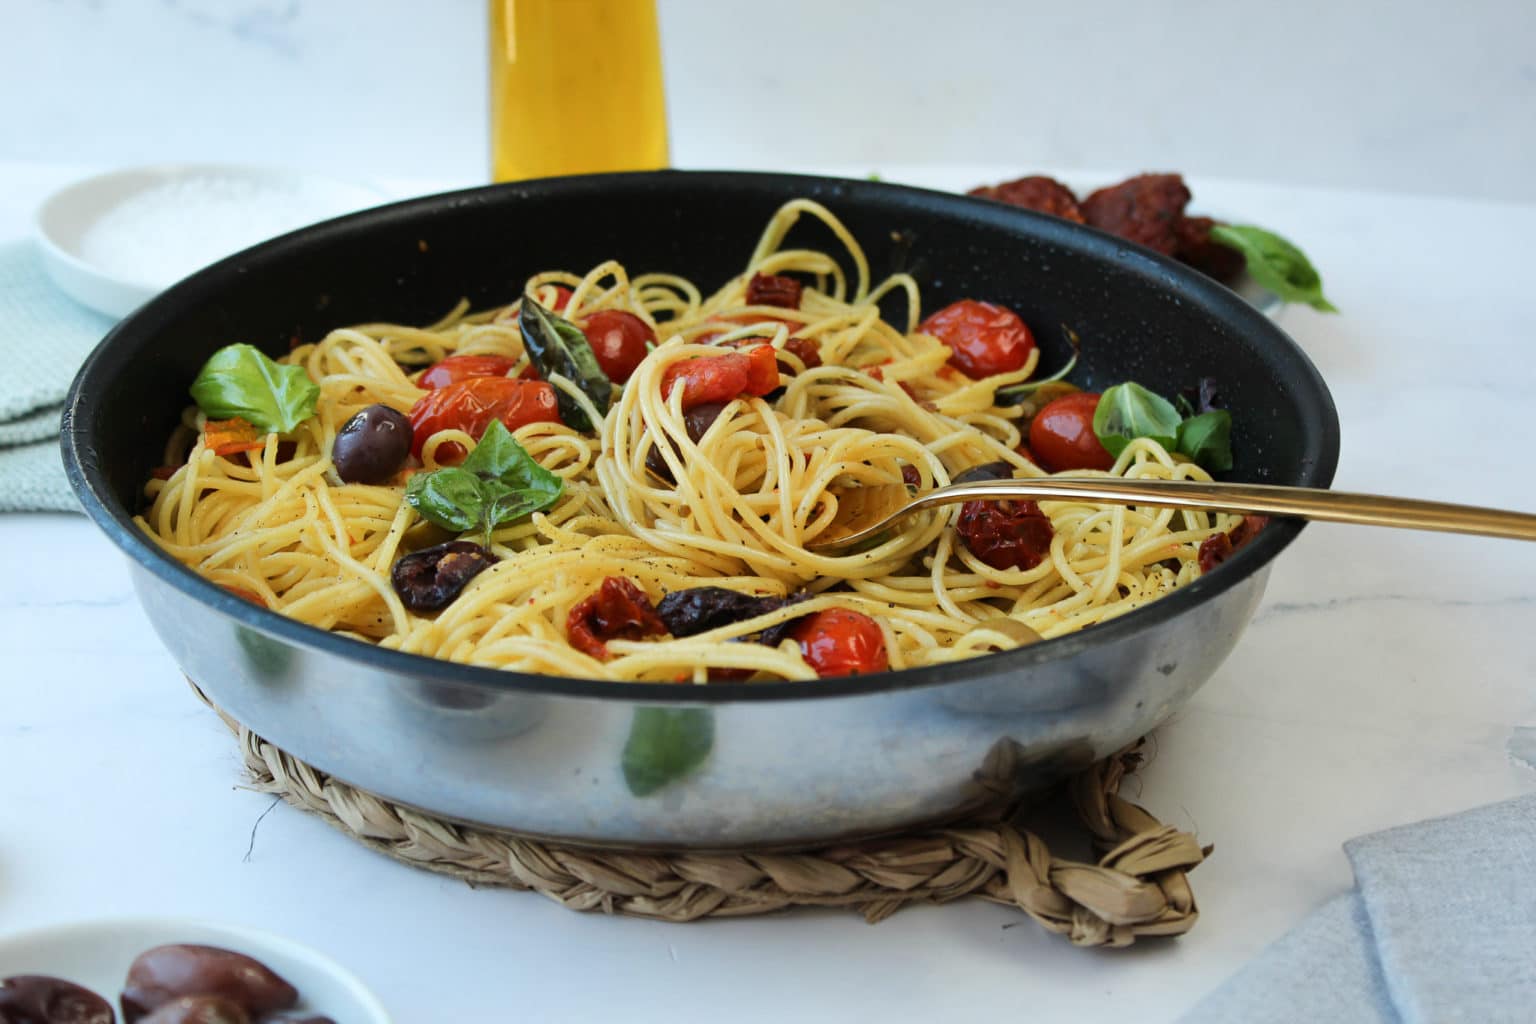 Spaghetti mit Knoblauch, Oliven, Tomaten und Olivenöl